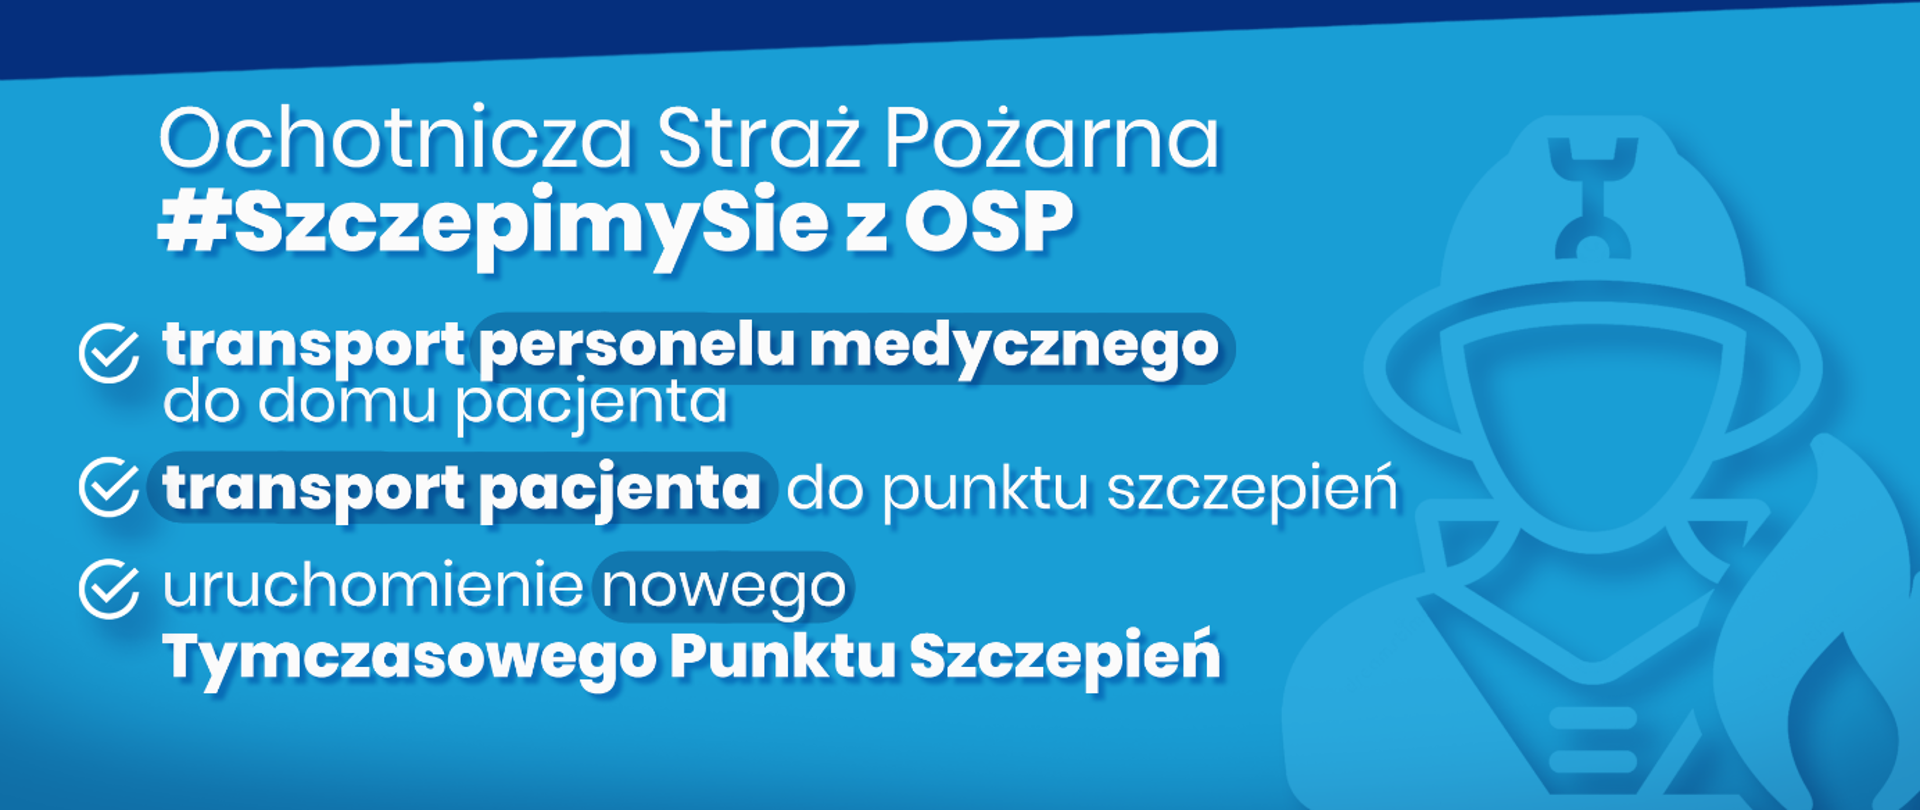 Konsultacje w sprawie programu #SZCZEPIMY SIĘ Z OSP w KP PSP Inowrocław